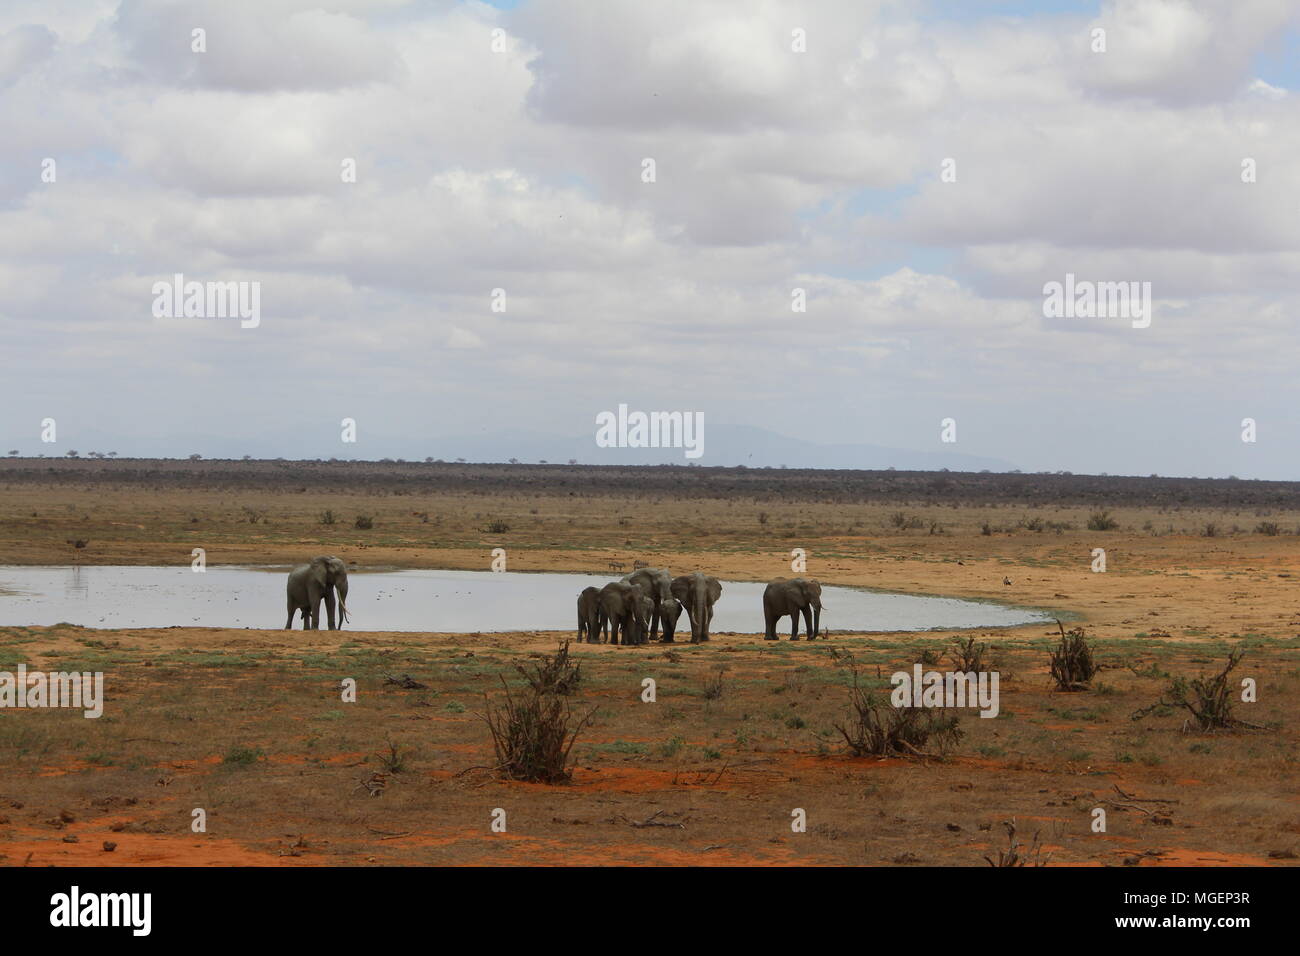 Gli elefanti a piedi nel Tsavo il parco naturale in Kenya con il blu del cielo e la savana in background con i suoi brillanti colori tendenti al rosso Foto Stock